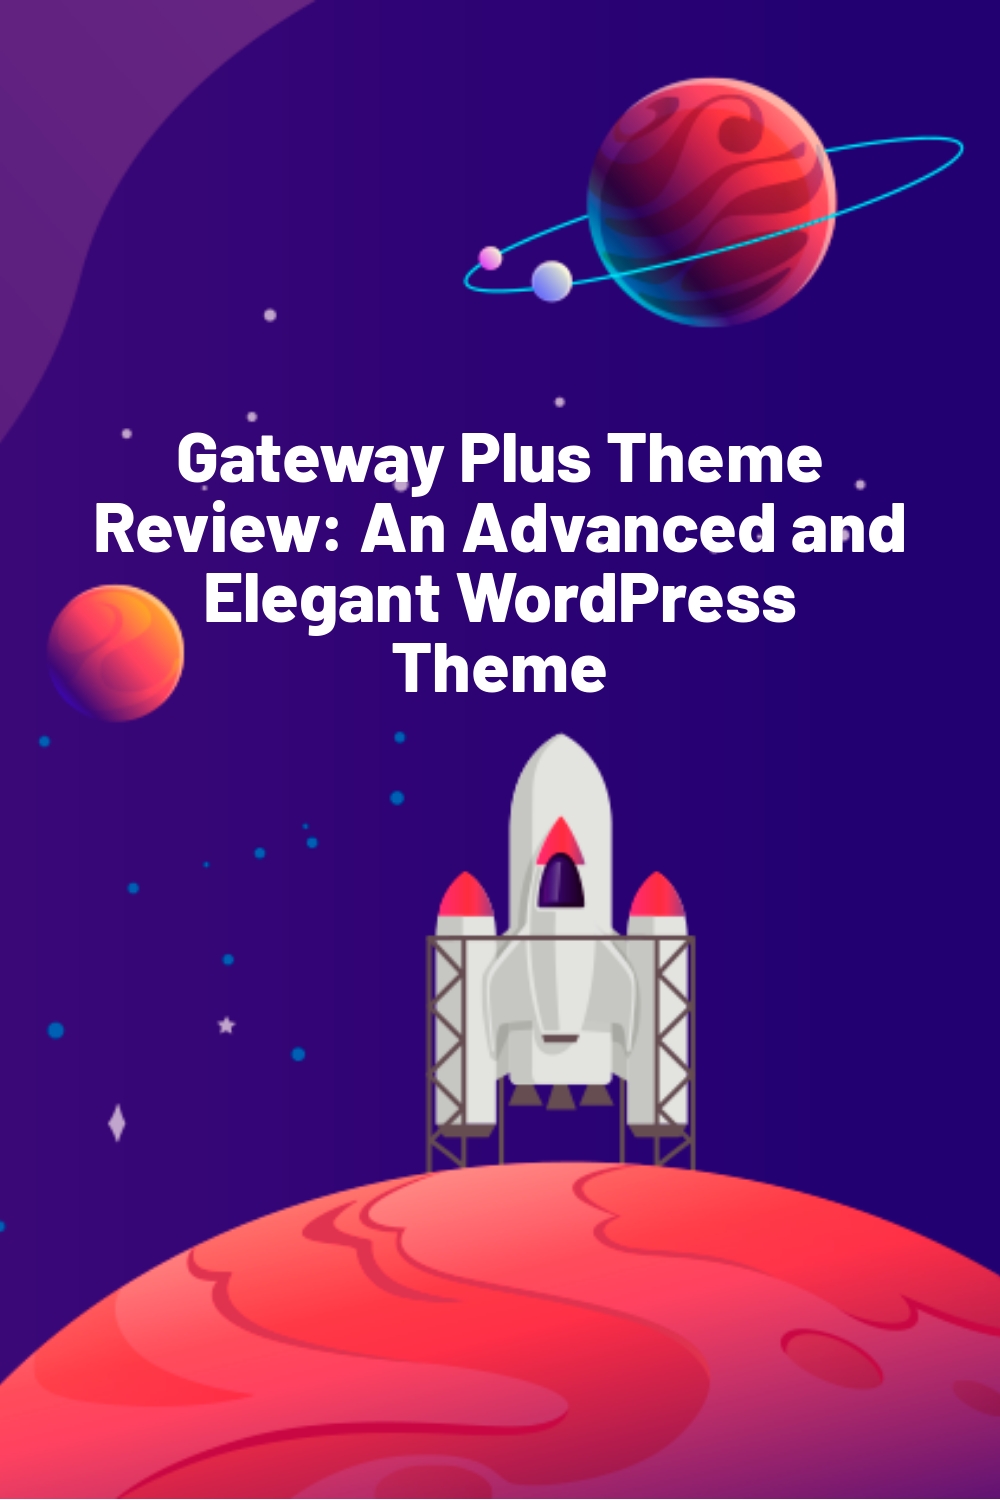 Gateway Plus Theme Review: An Advanced and Elegant WordPress Theme